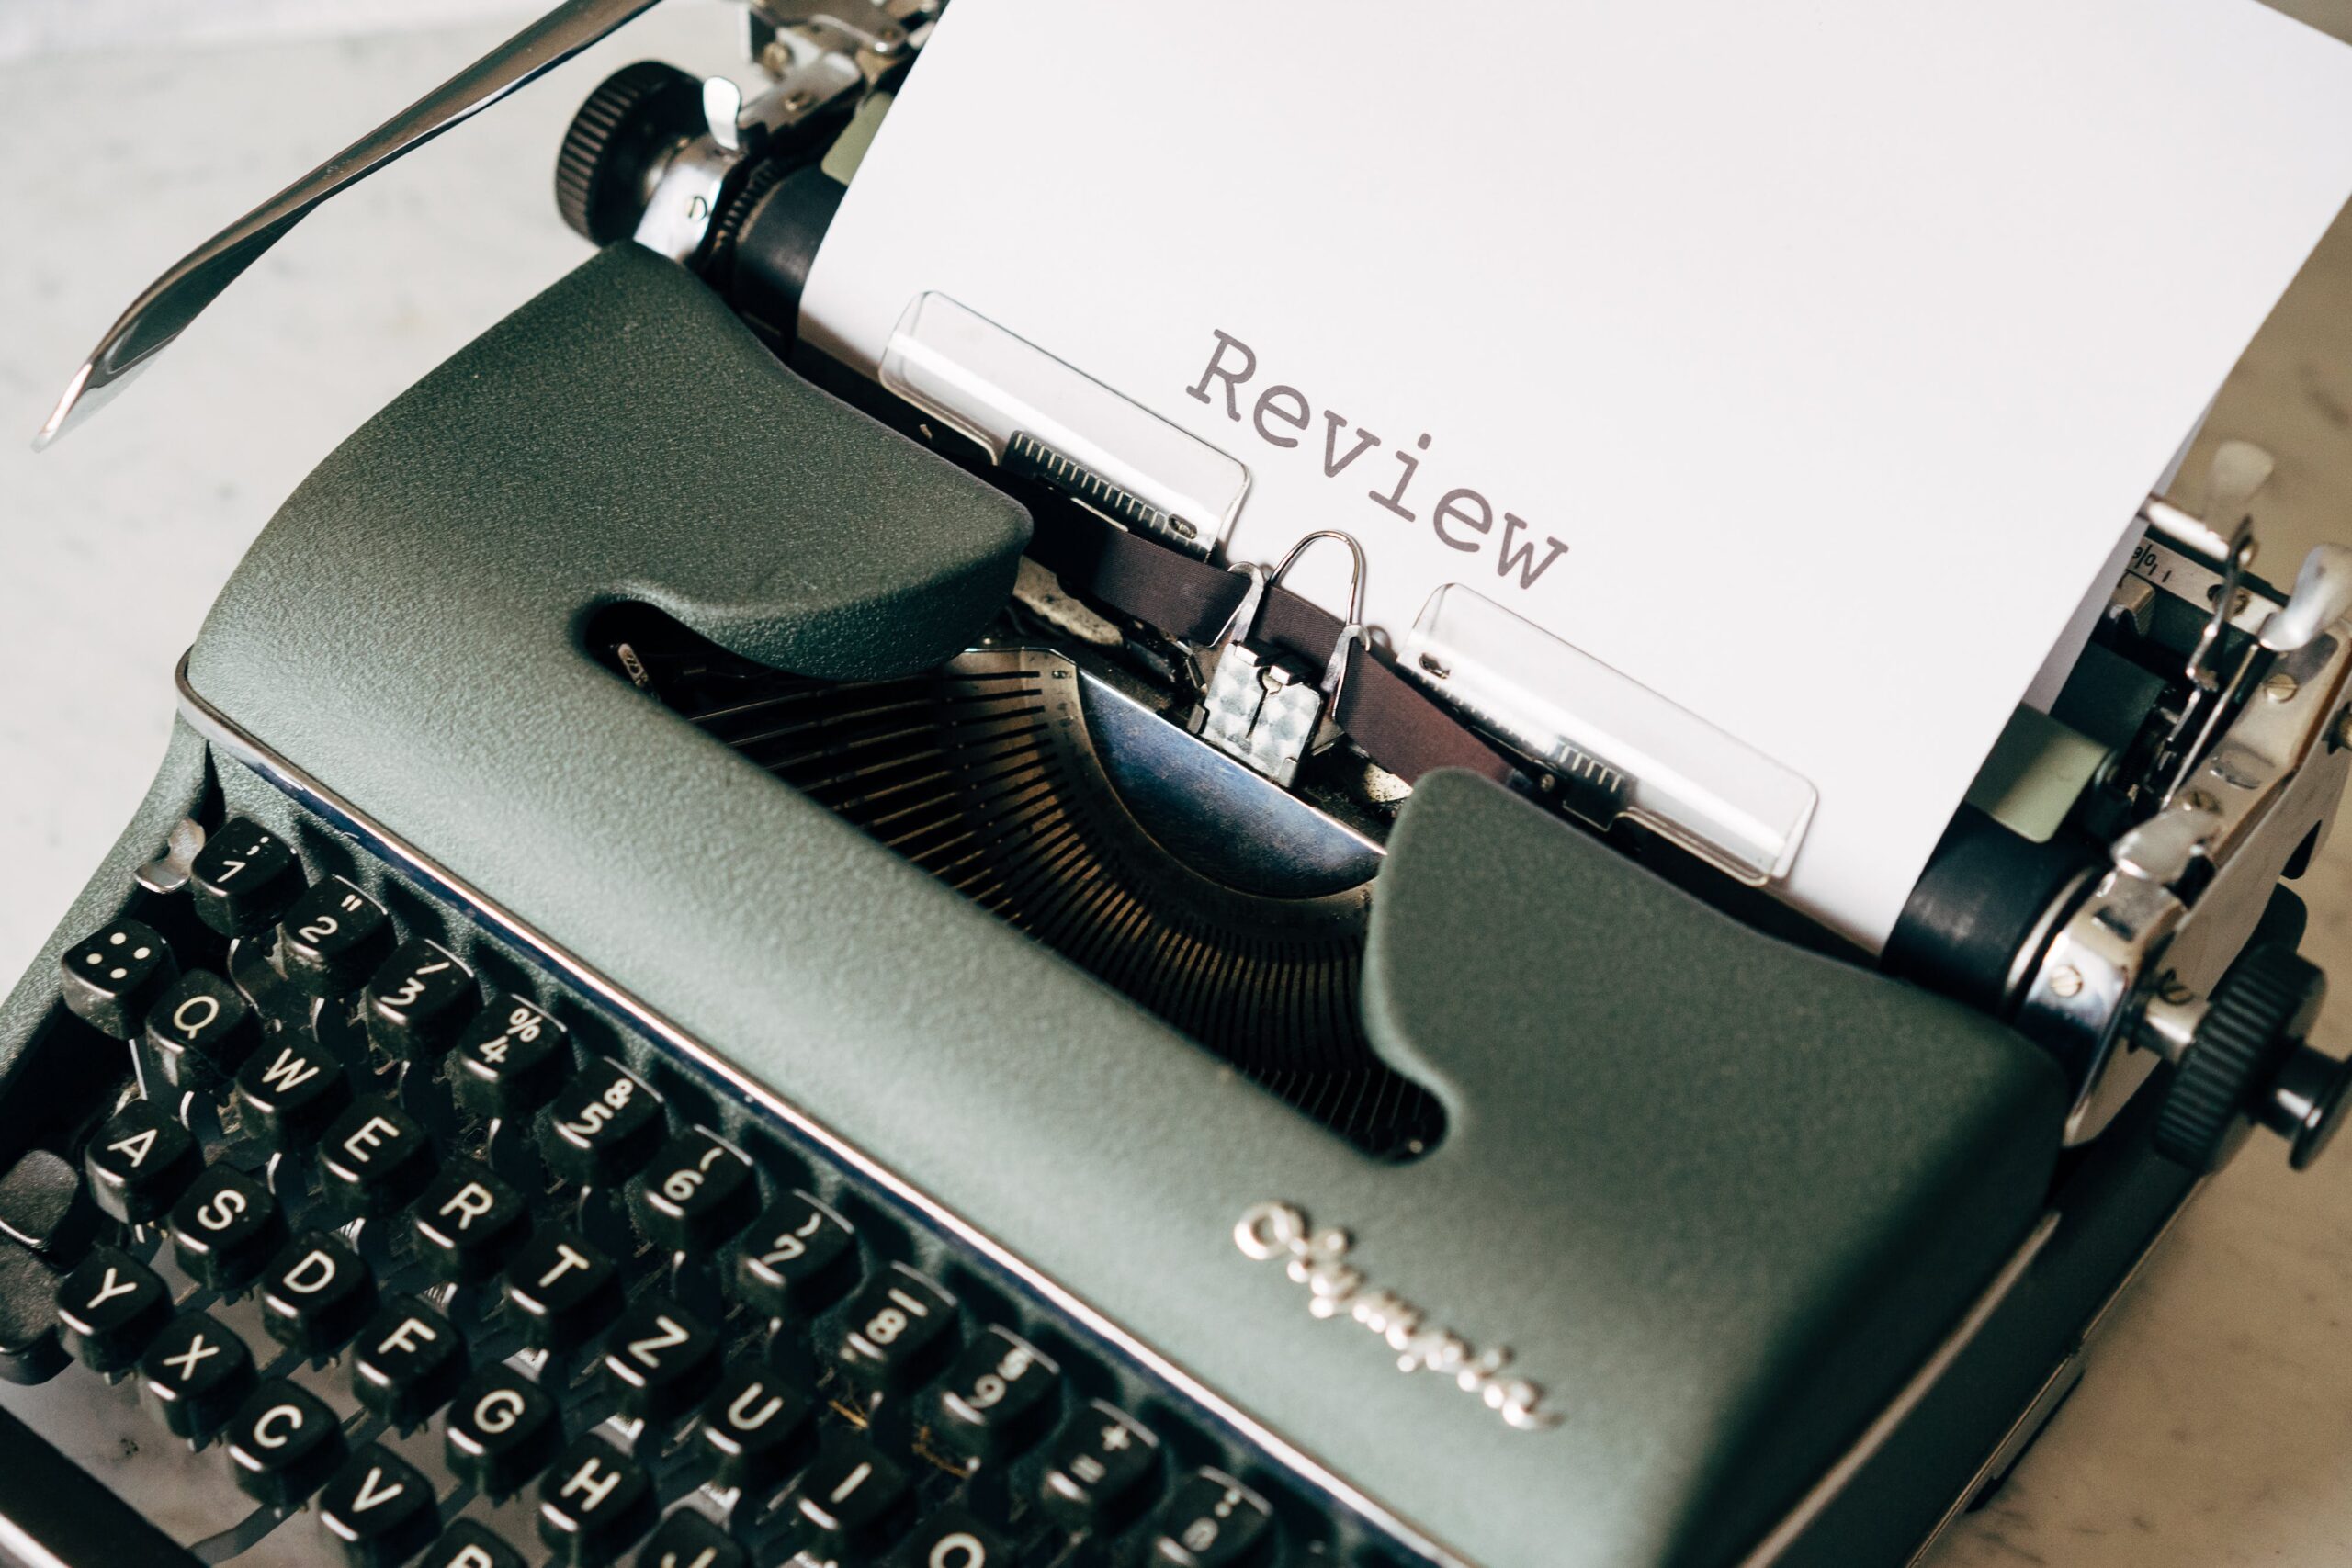 typewriter "Review"